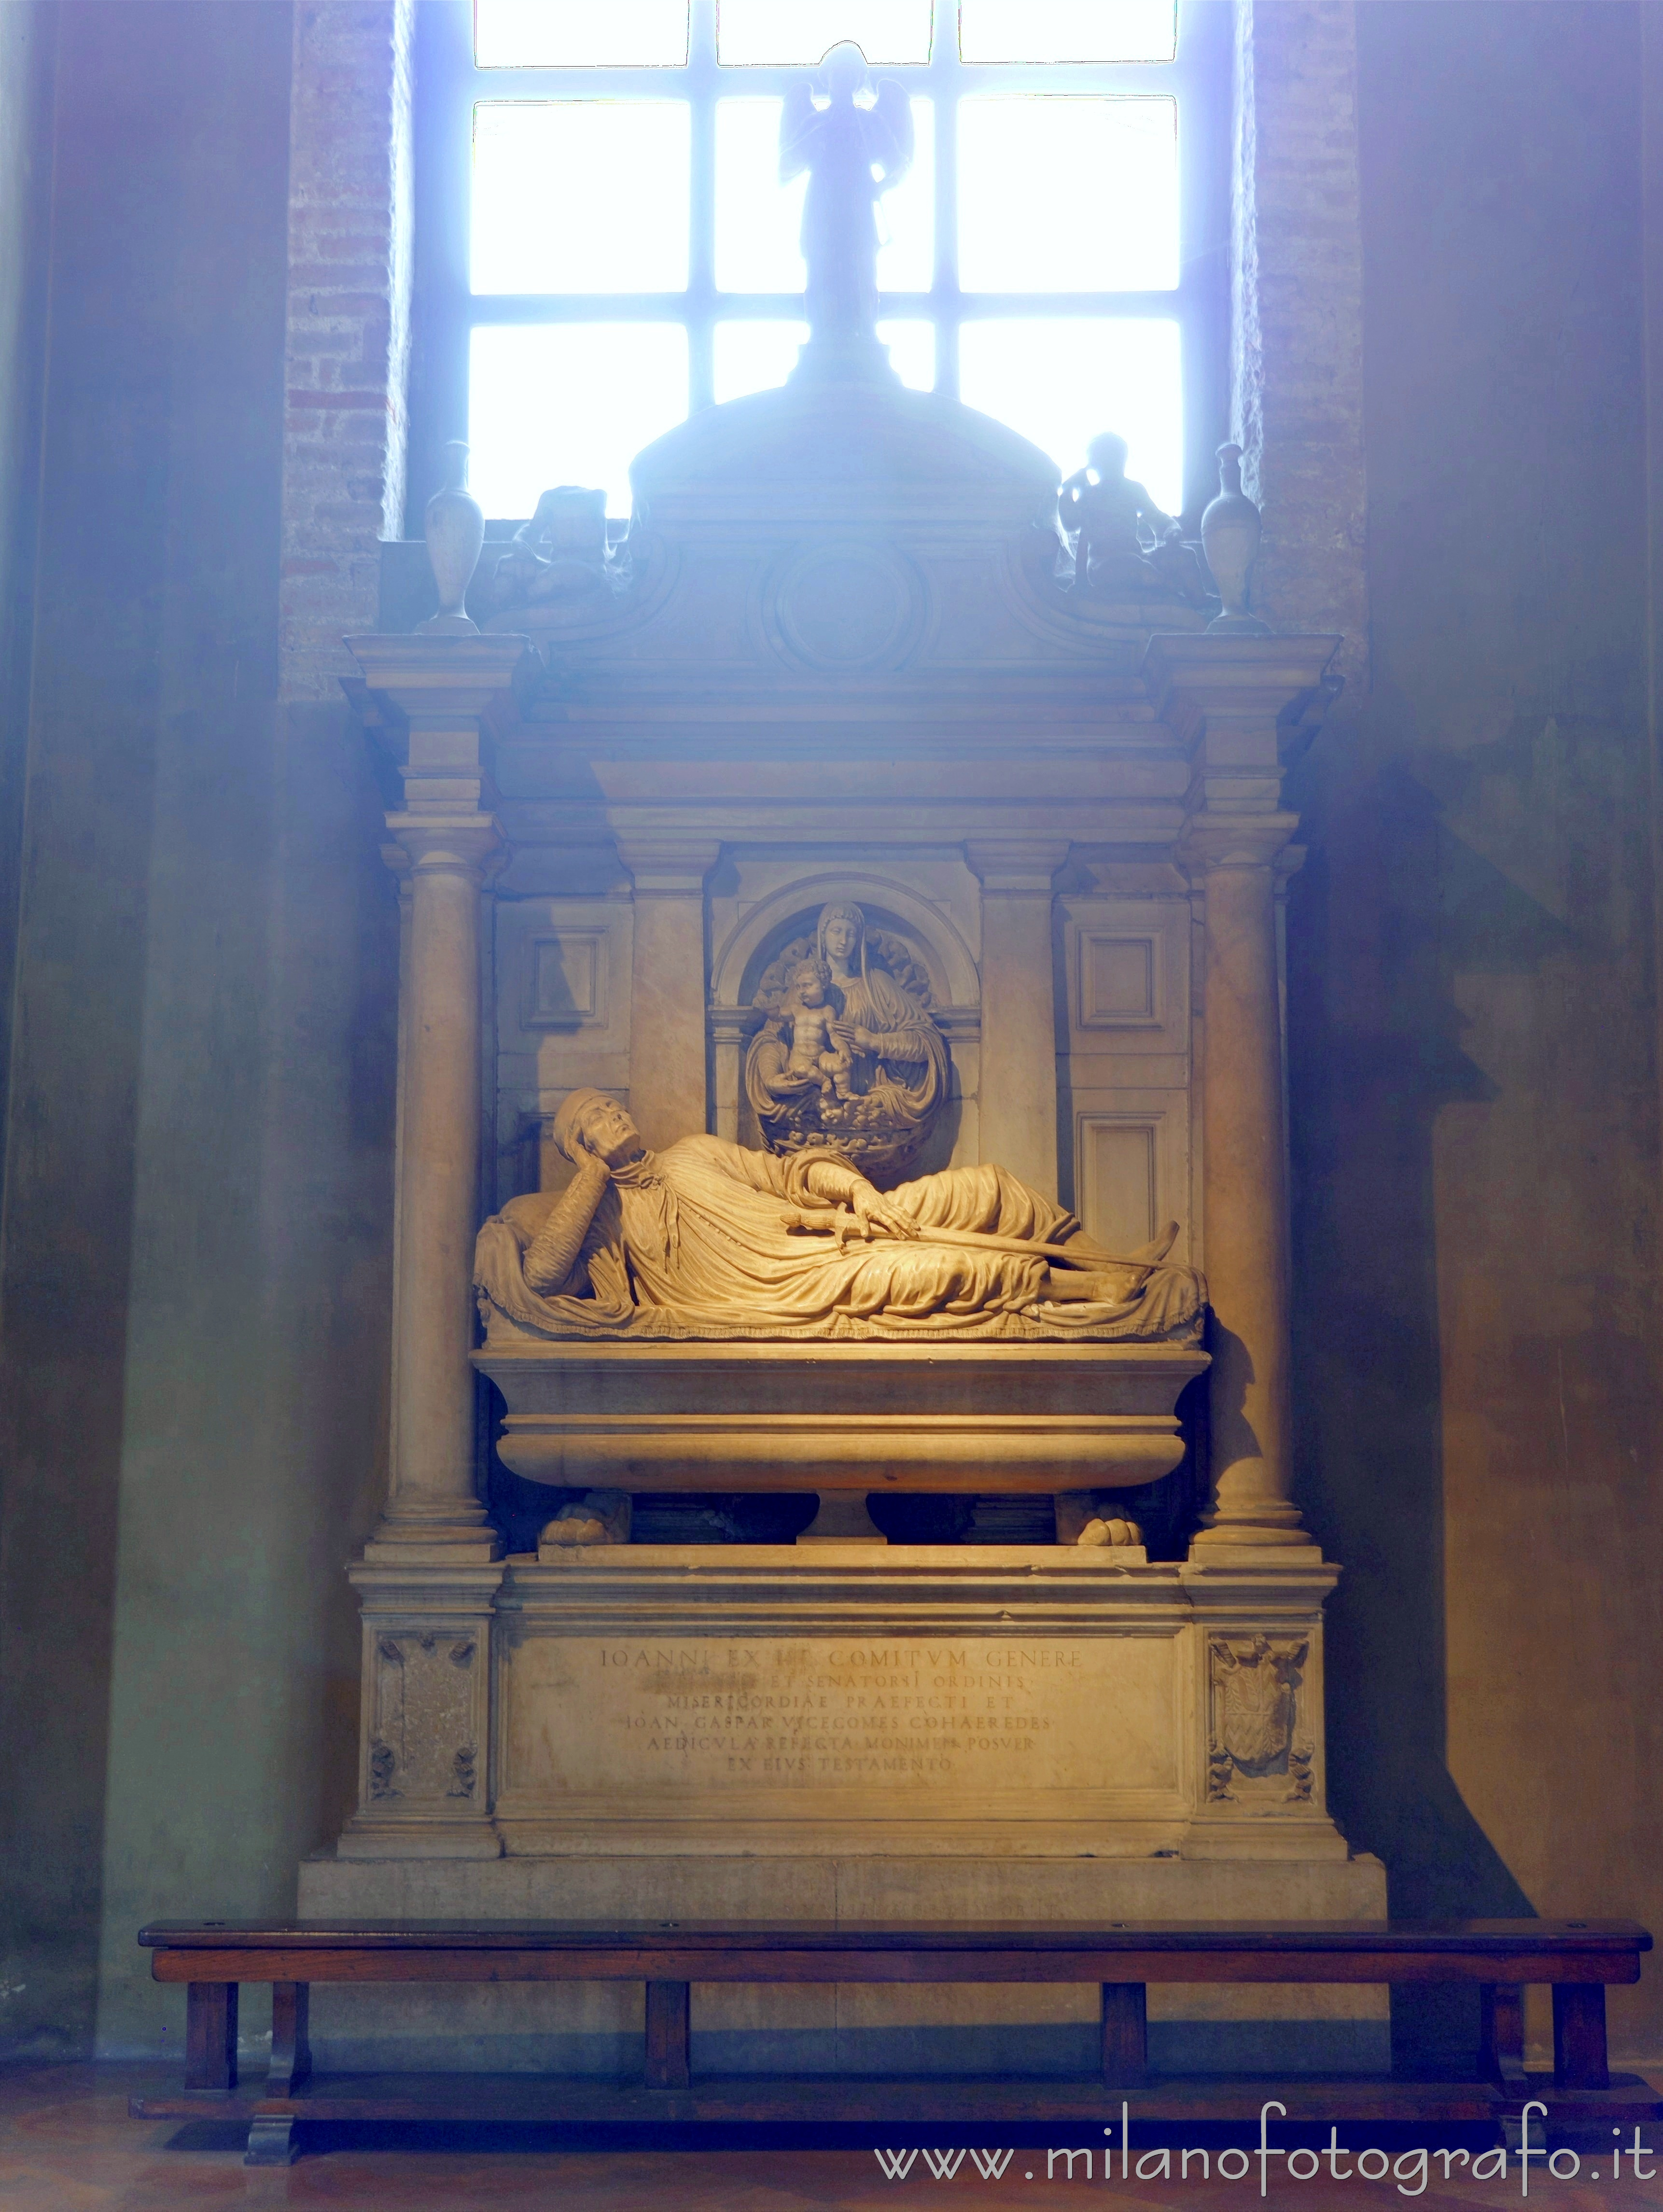 Milano: Monumento funebre di Giovanni del Conte nella Basilica di San Lorenzo Maggiore - Milano